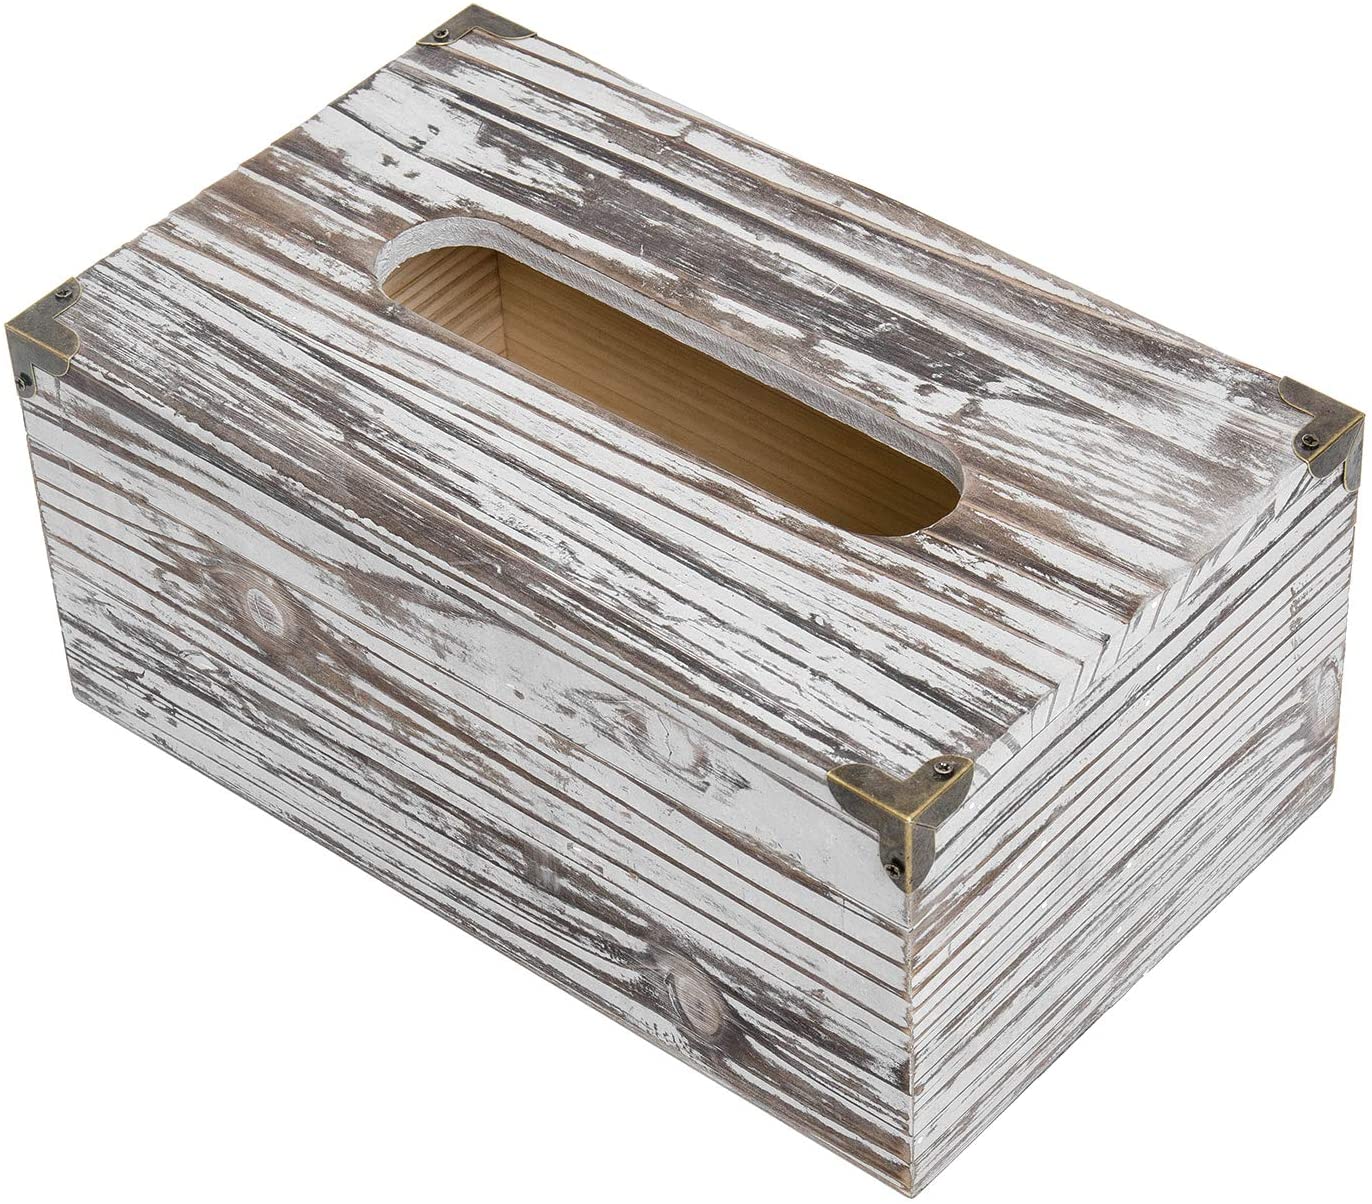 Rustic Dark Brown Distressed Wood Facial Tissue Paper Box Metal Corner